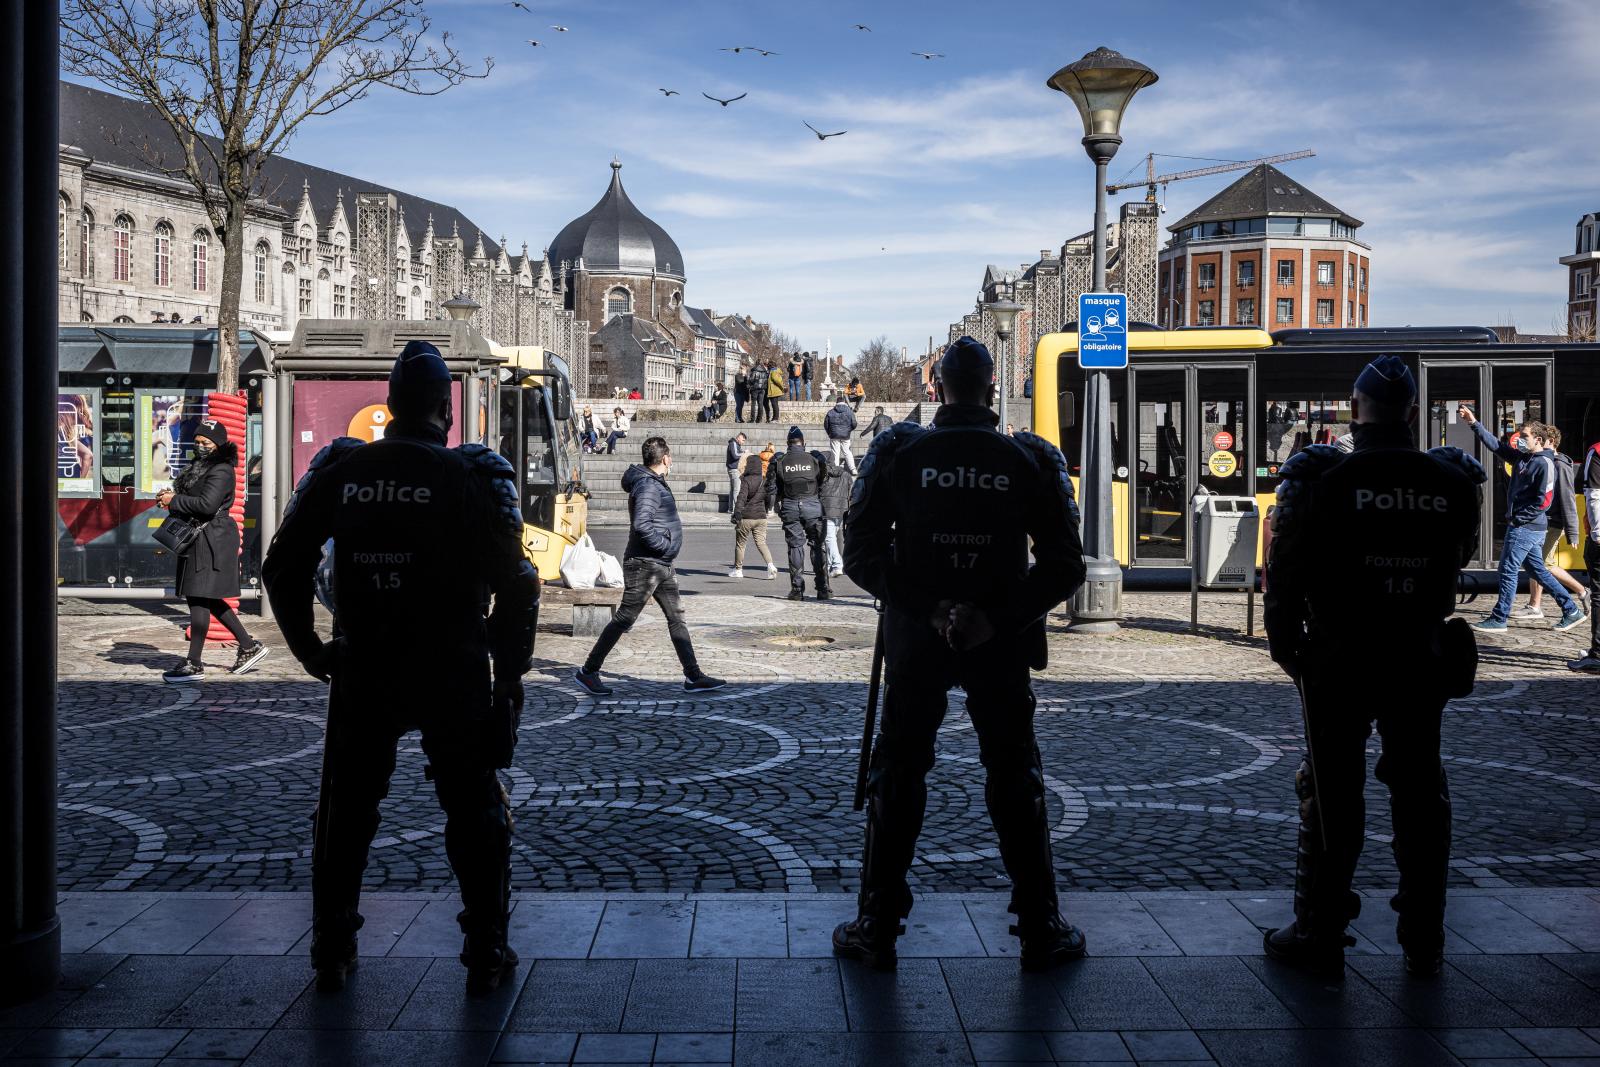 BELGIUM - POLICE DEPLOYMENT IN LIEGE CITY CENTER